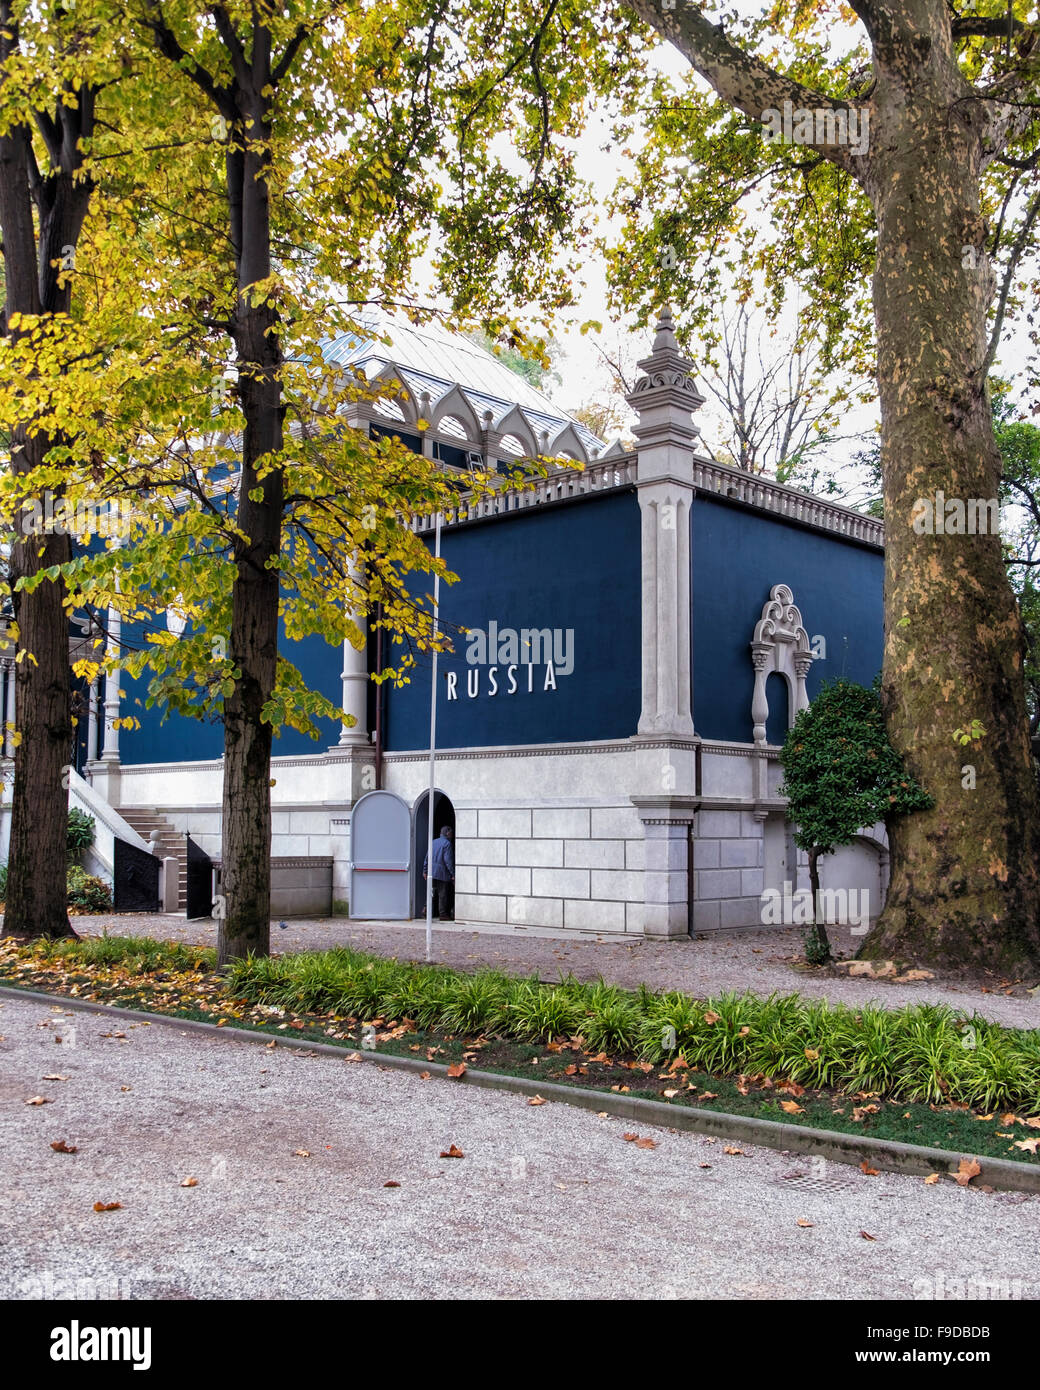 Padiglione russo esterno al 2015 56th Biennale di Venezia curata da Okwui Enwezor.La Biennale di Venezia, la Biennale Internazionale di Arte Fiera Foto Stock